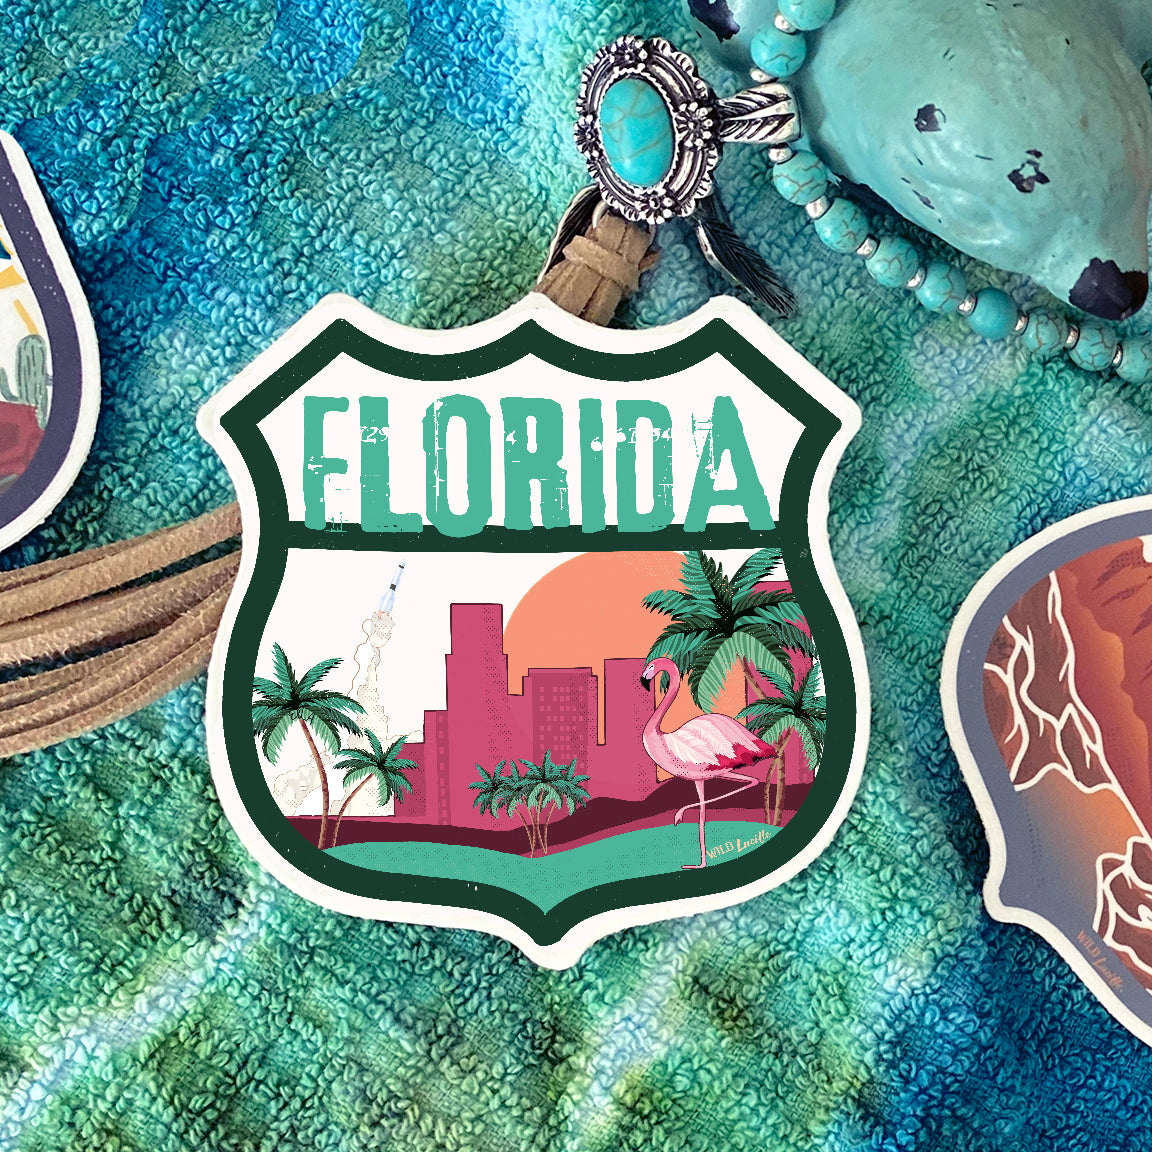 Destination Florida - Vinyl Souvenir Sticker Decals